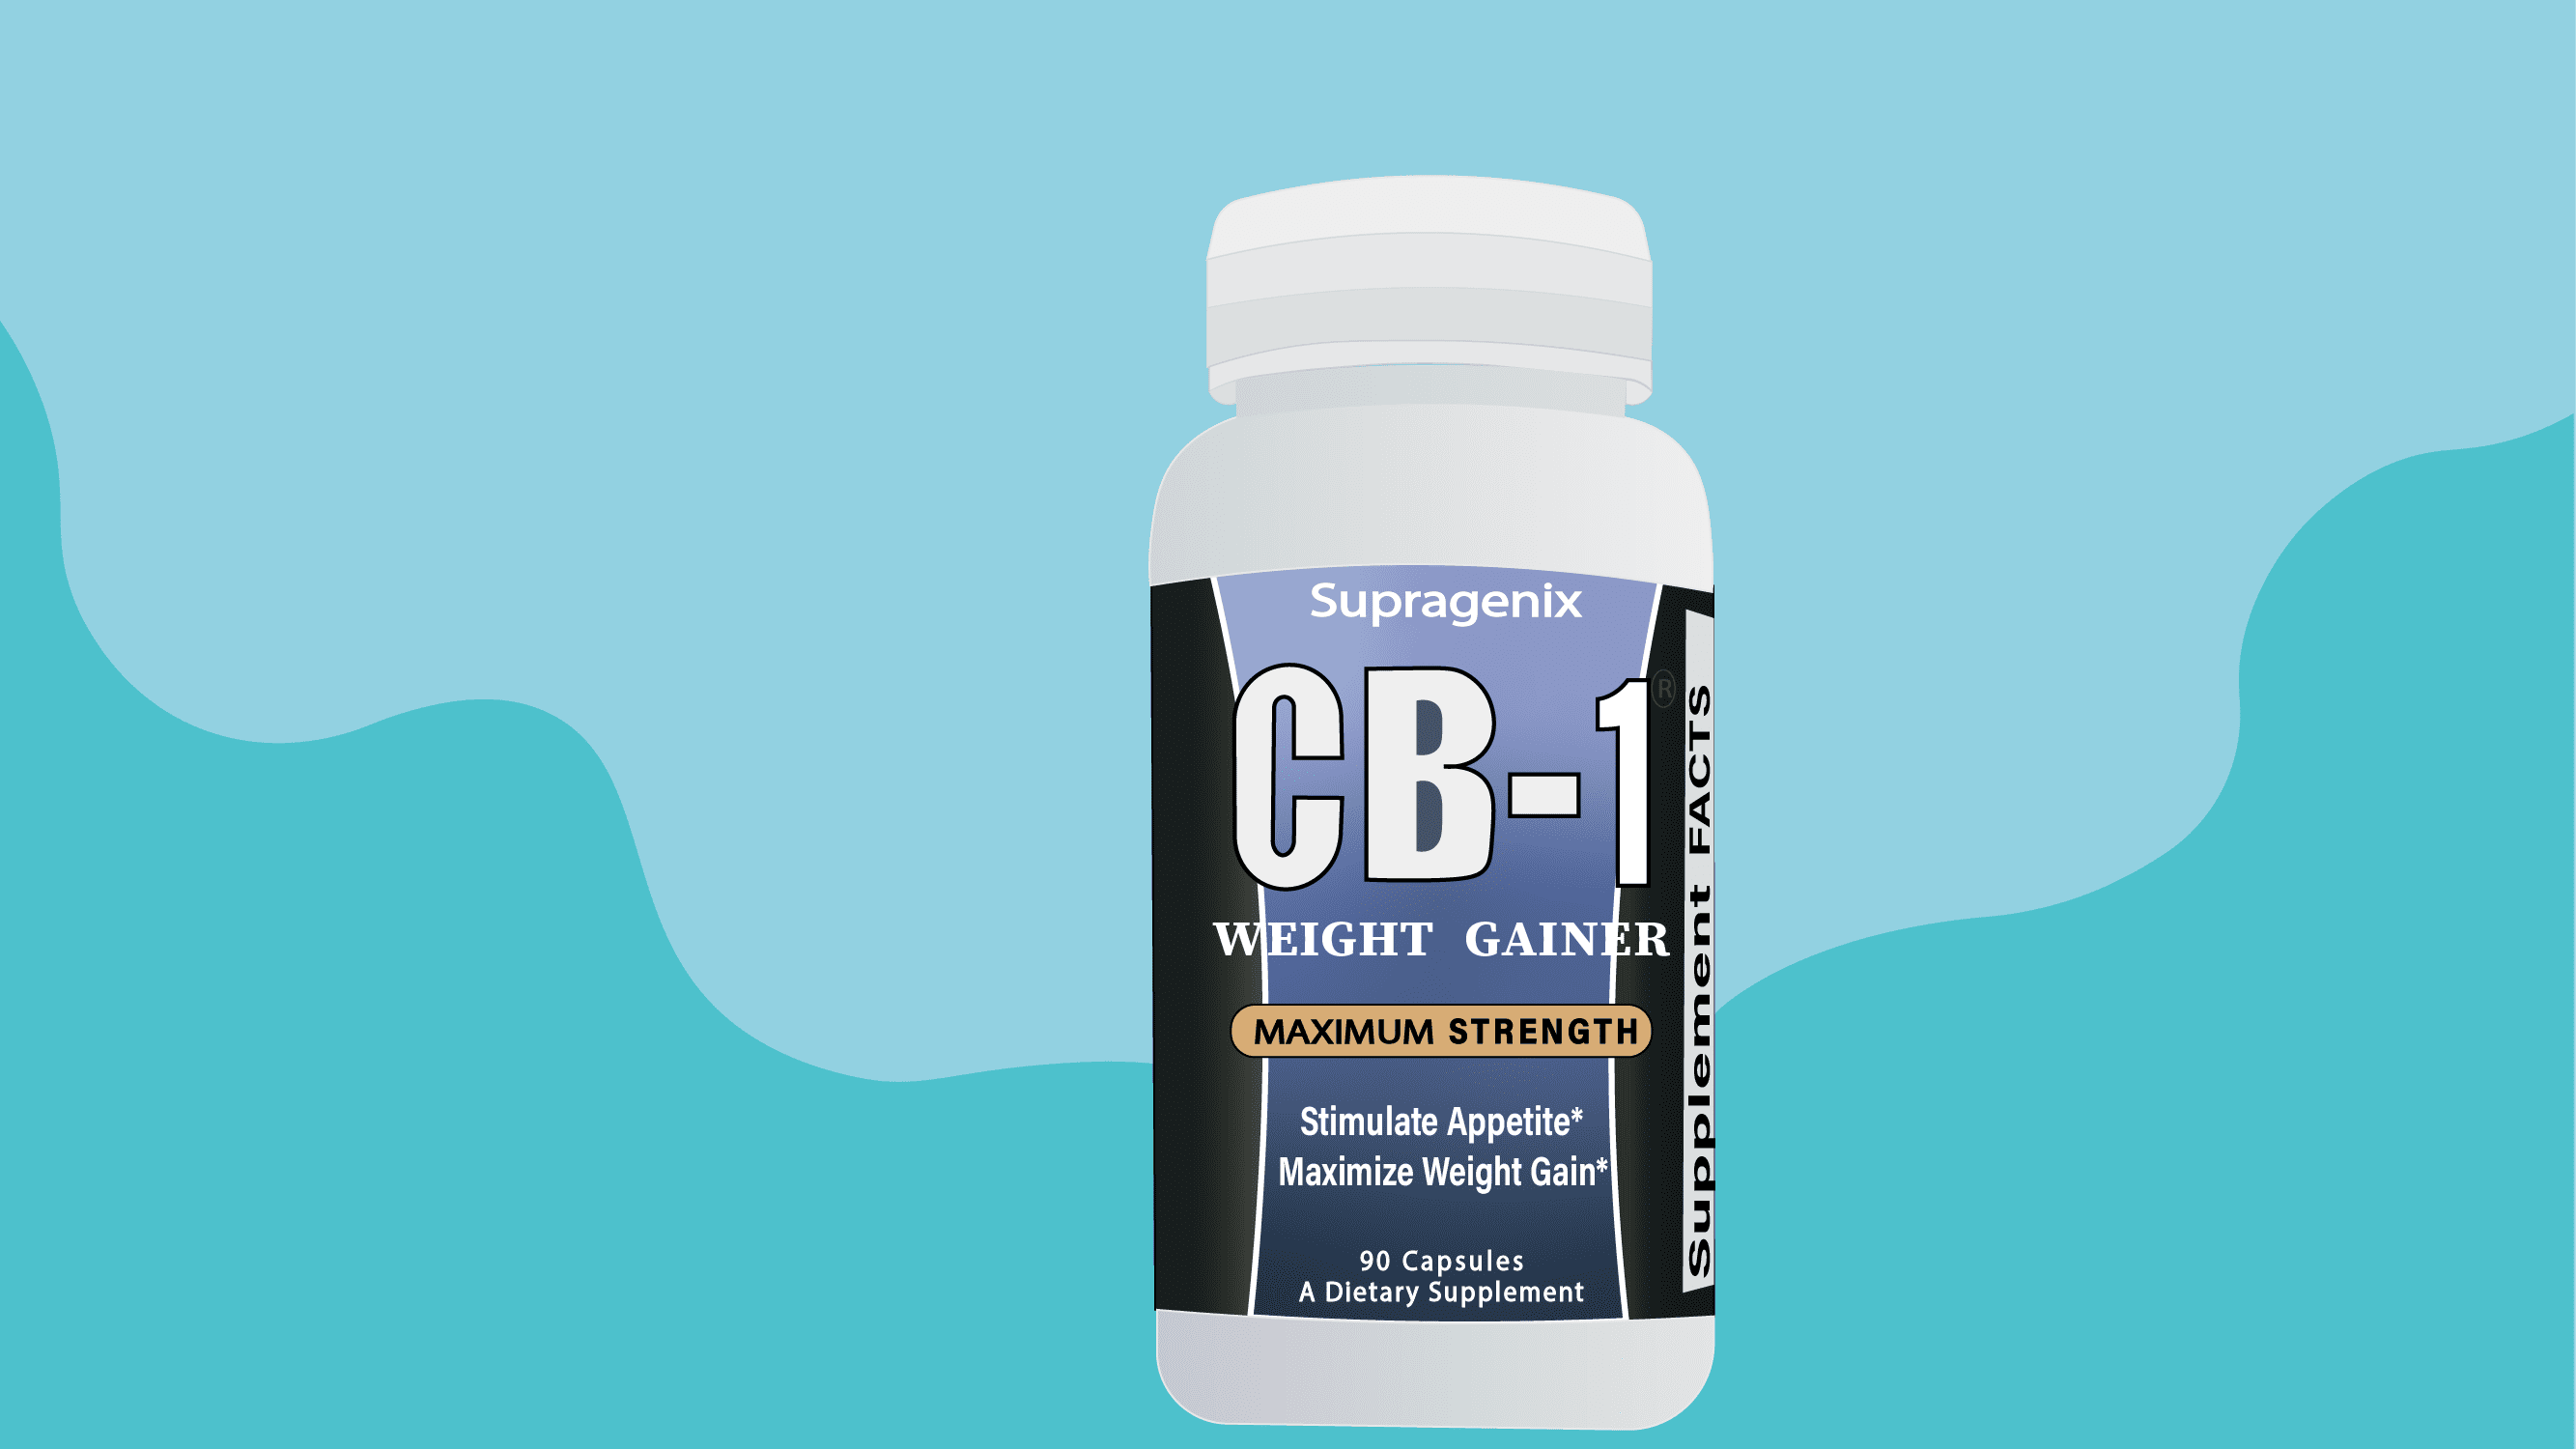 CB-1 Weight Gainer supplement in center